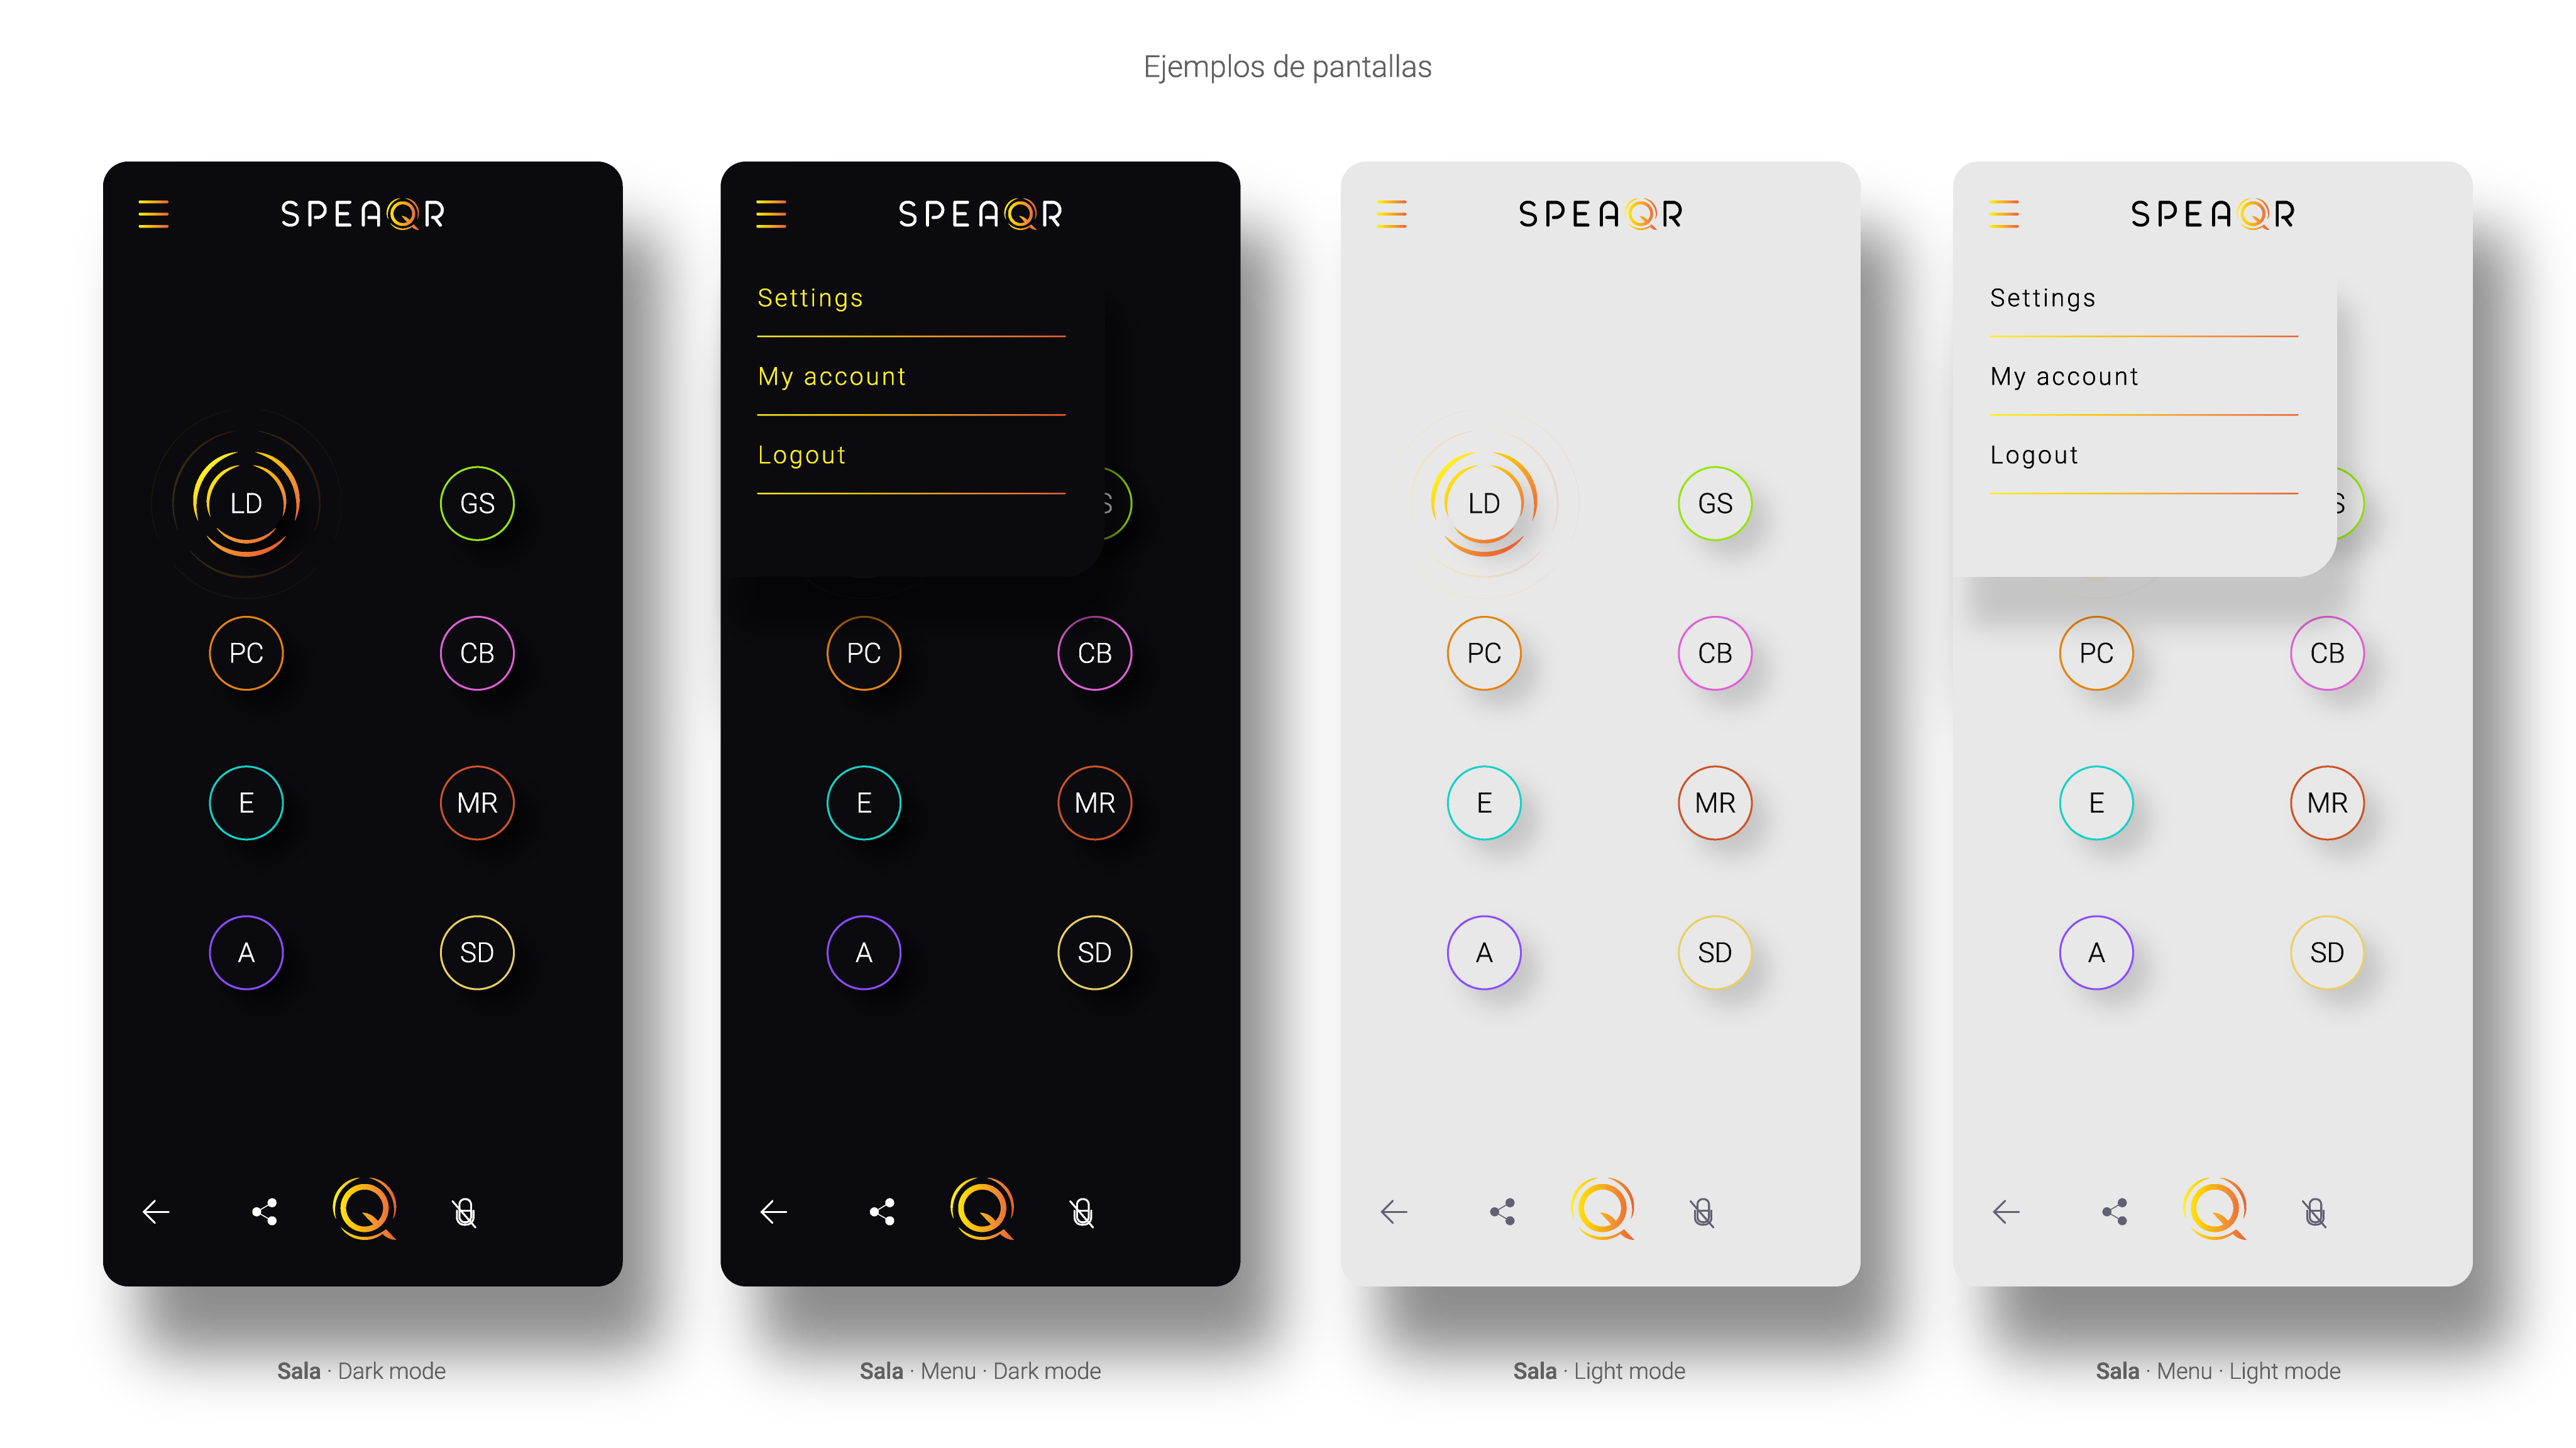 Diseño de la pantalla de inicio de sesión de la app